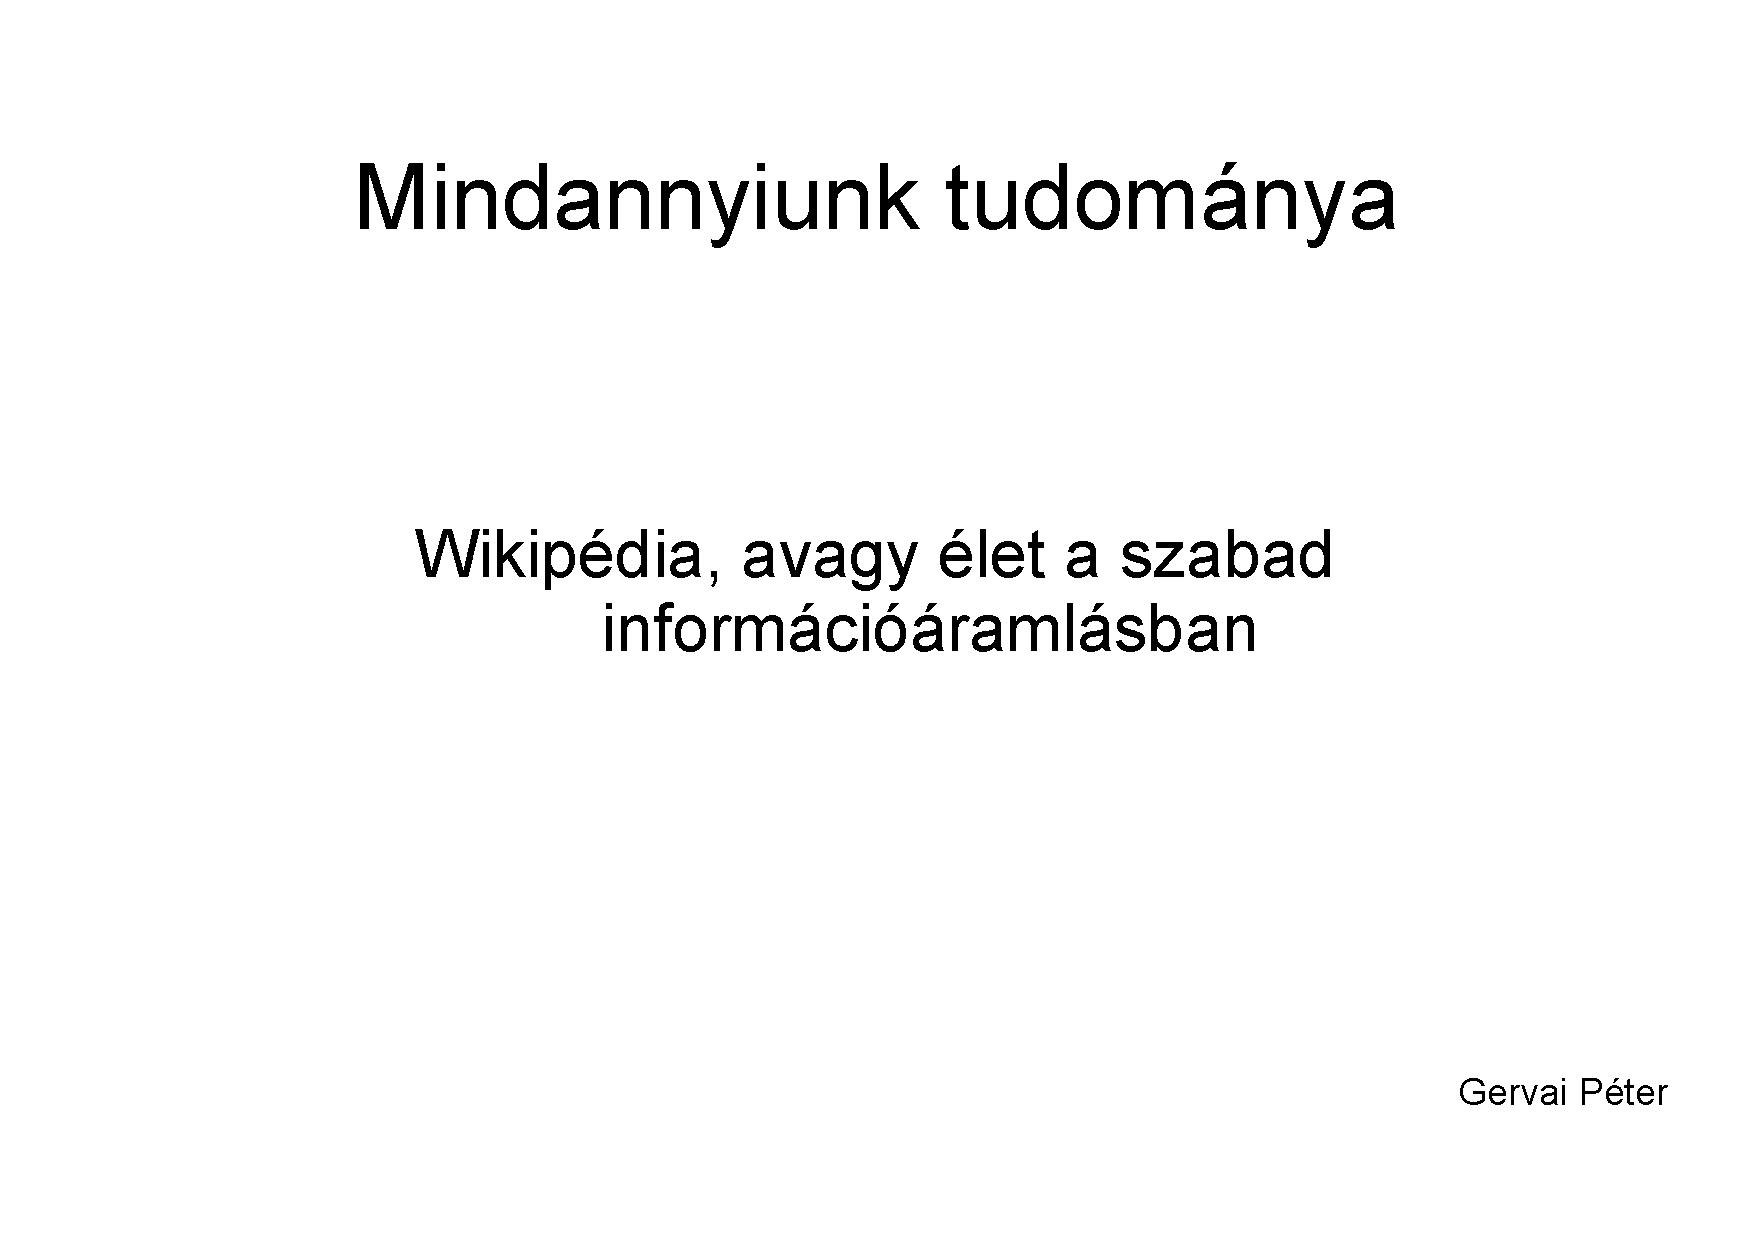 HTE Előadás slide, 2008 január